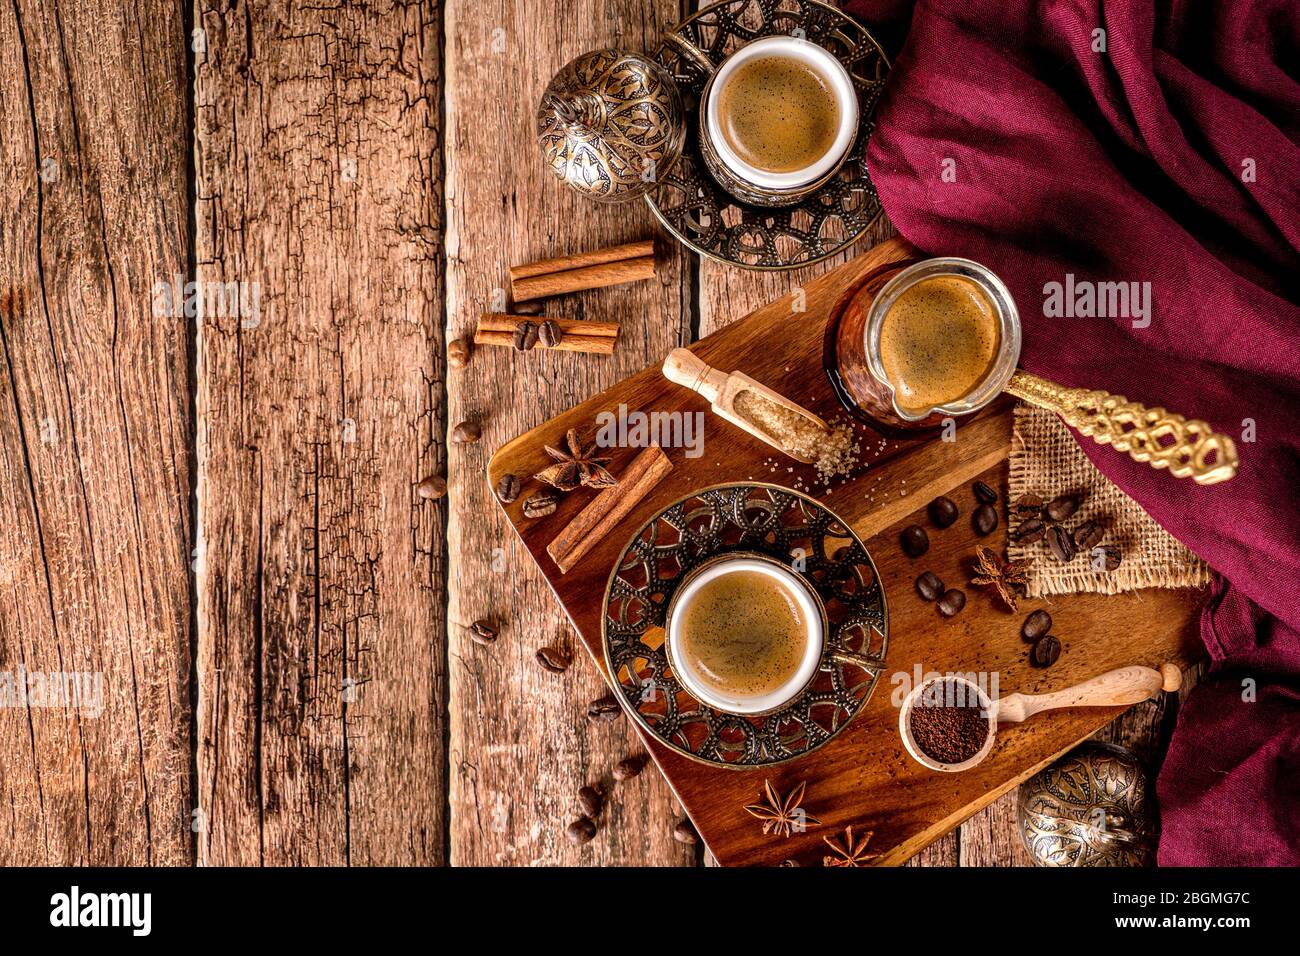 Vista de arriba hacia abajo de la taza de café, los frijoles y las especias con espacio para texto Foto de stock